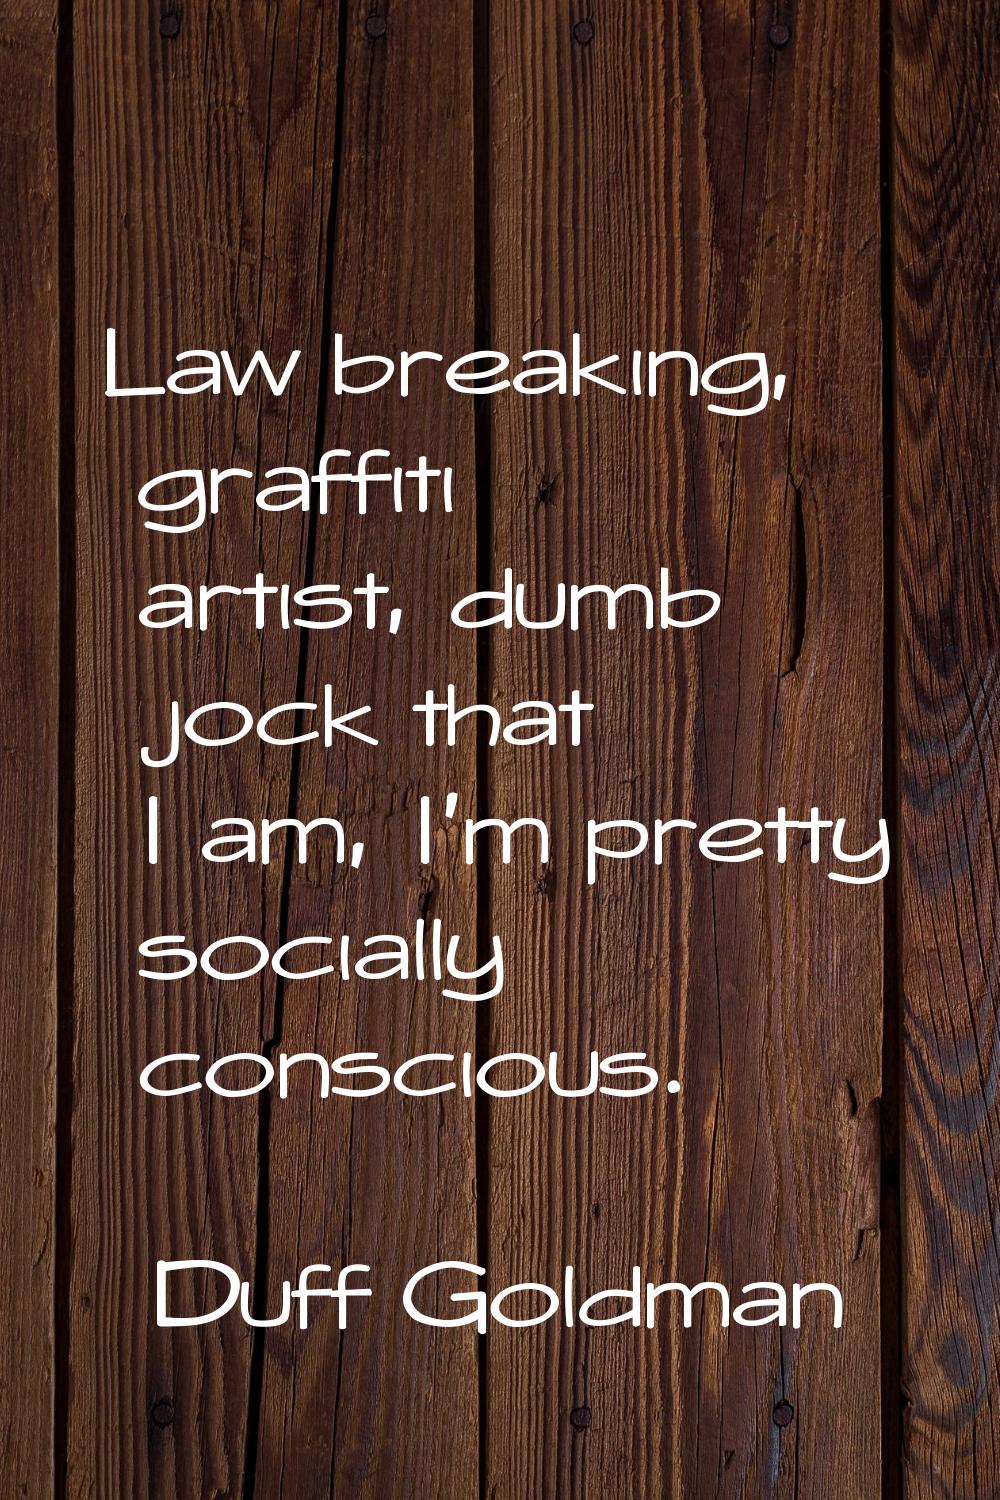 Law breaking, graffiti artist, dumb jock that I am, I'm pretty socially conscious.